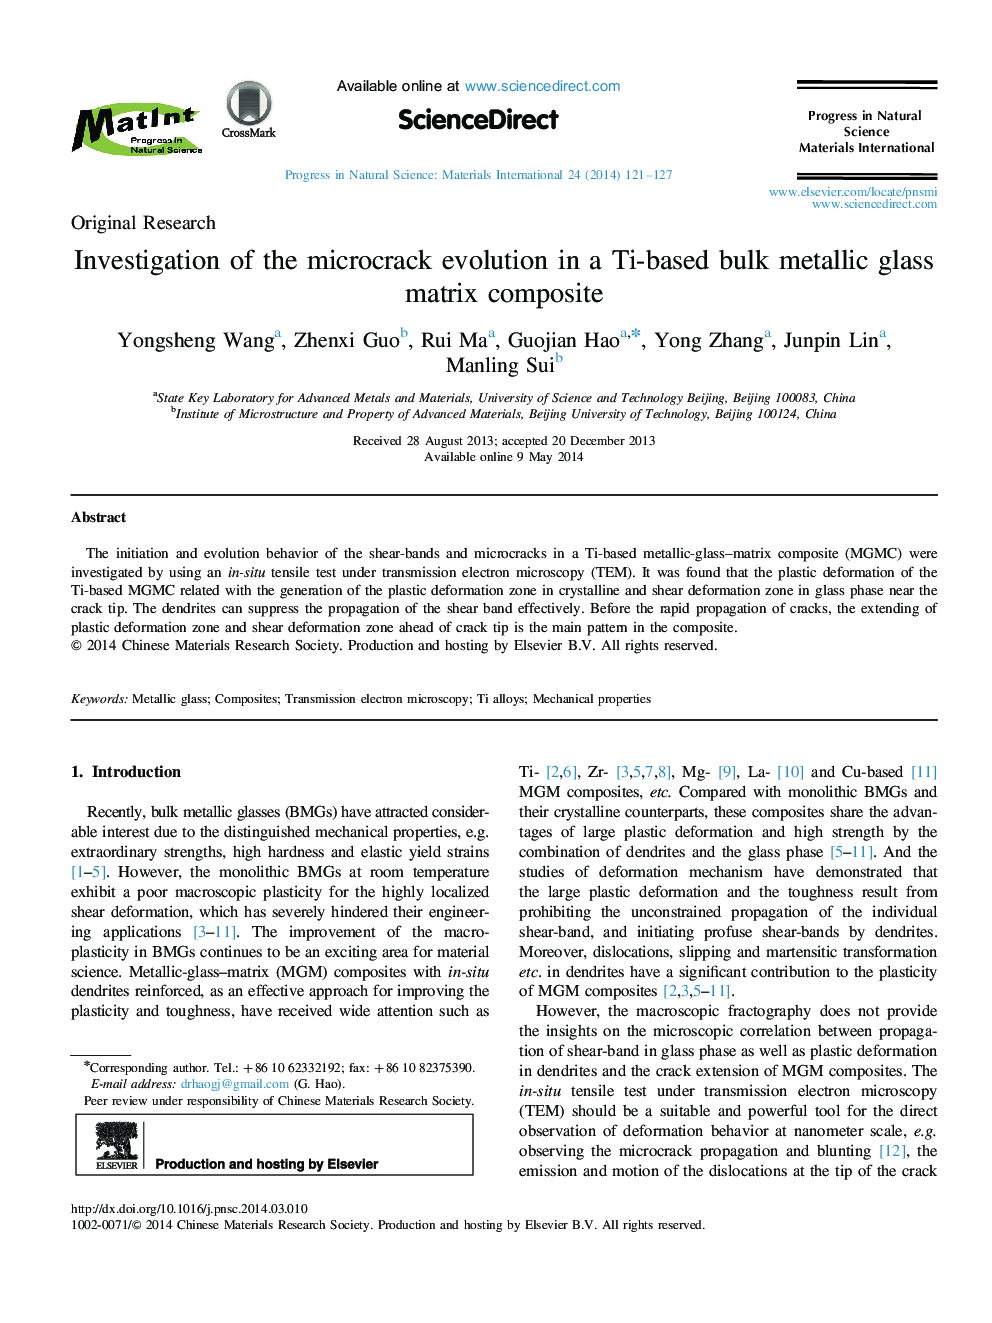 Investigation of the microcrack evolution in a Ti-based bulk metallic glass matrix composite 